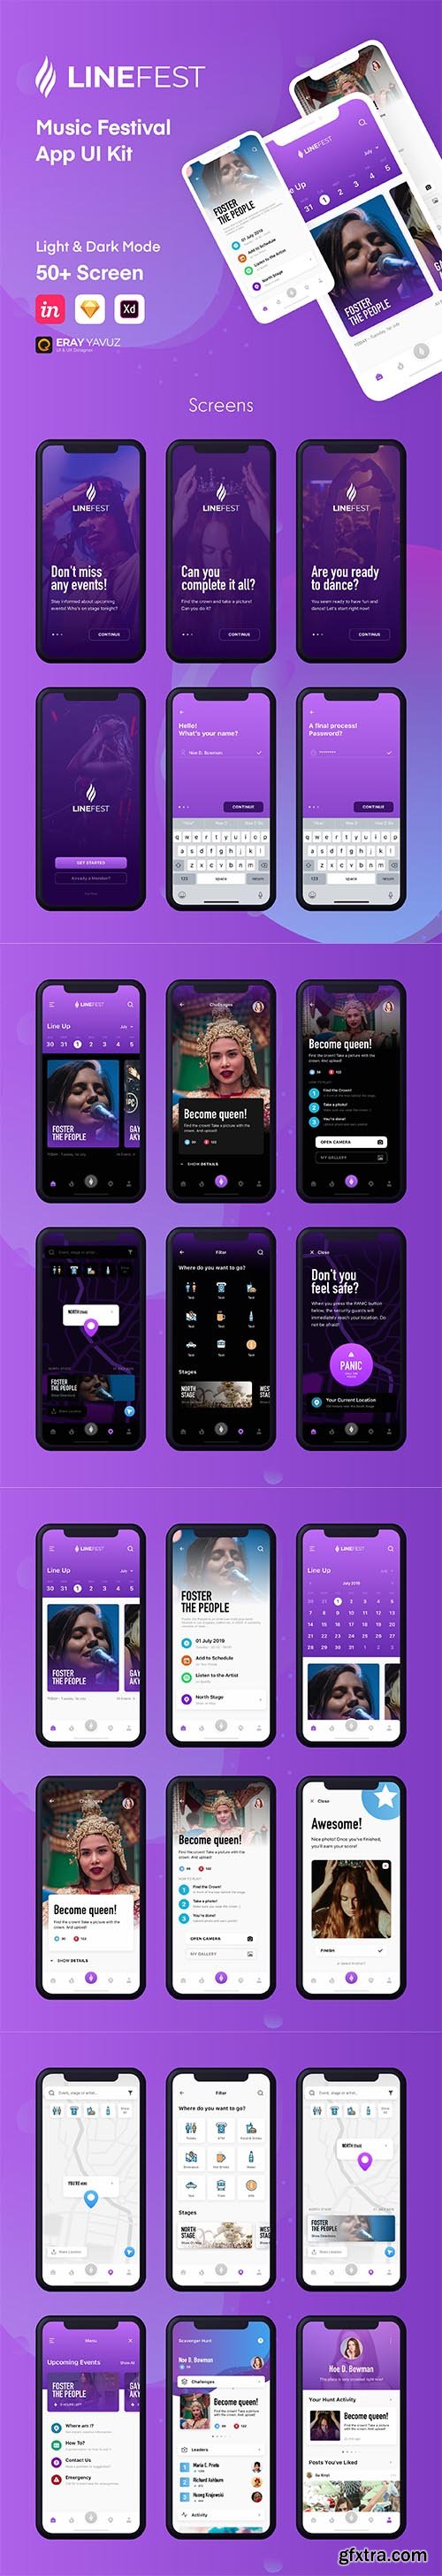 LineFest - Music Festival Mobile App UI Kit